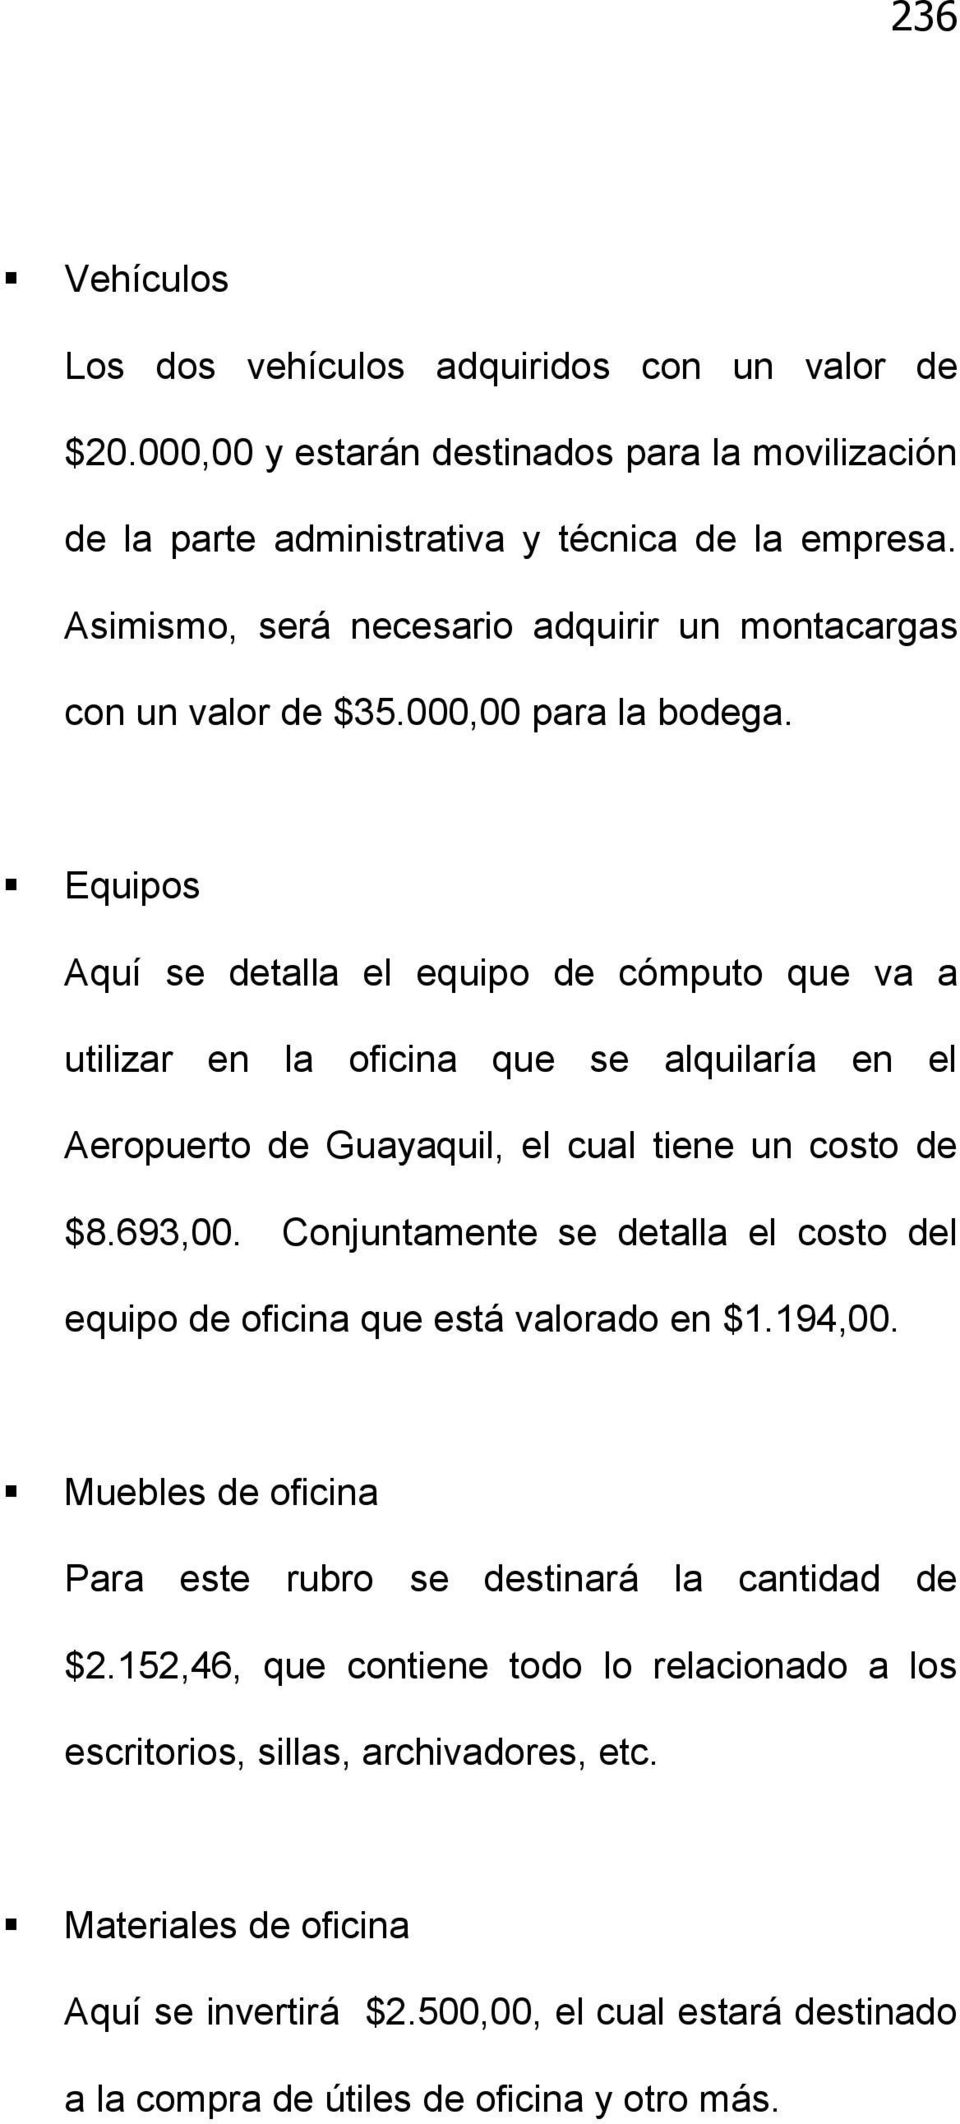 Equipos Aquí se detalla el equipo de cómputo que va a utilizar en la oficina que se alquilaría en el Aeropuerto de Guayaquil, el cual tiene un costo de $8.693,00.